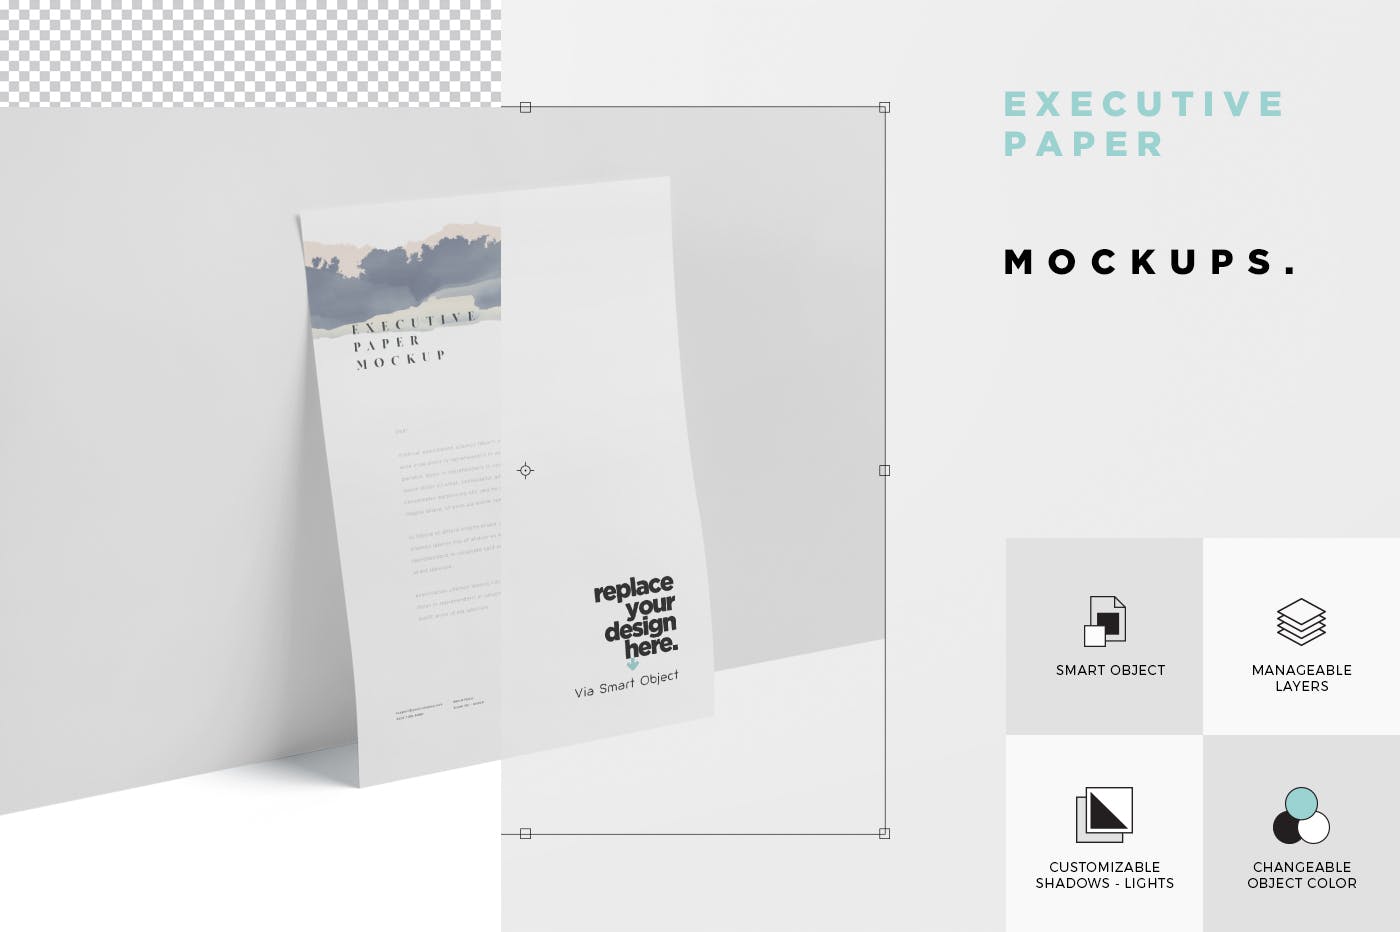 企业宣传单张设计效果图样机16设计网精选 Executive Paper Mockup – 7×10 Inch Size插图(5)